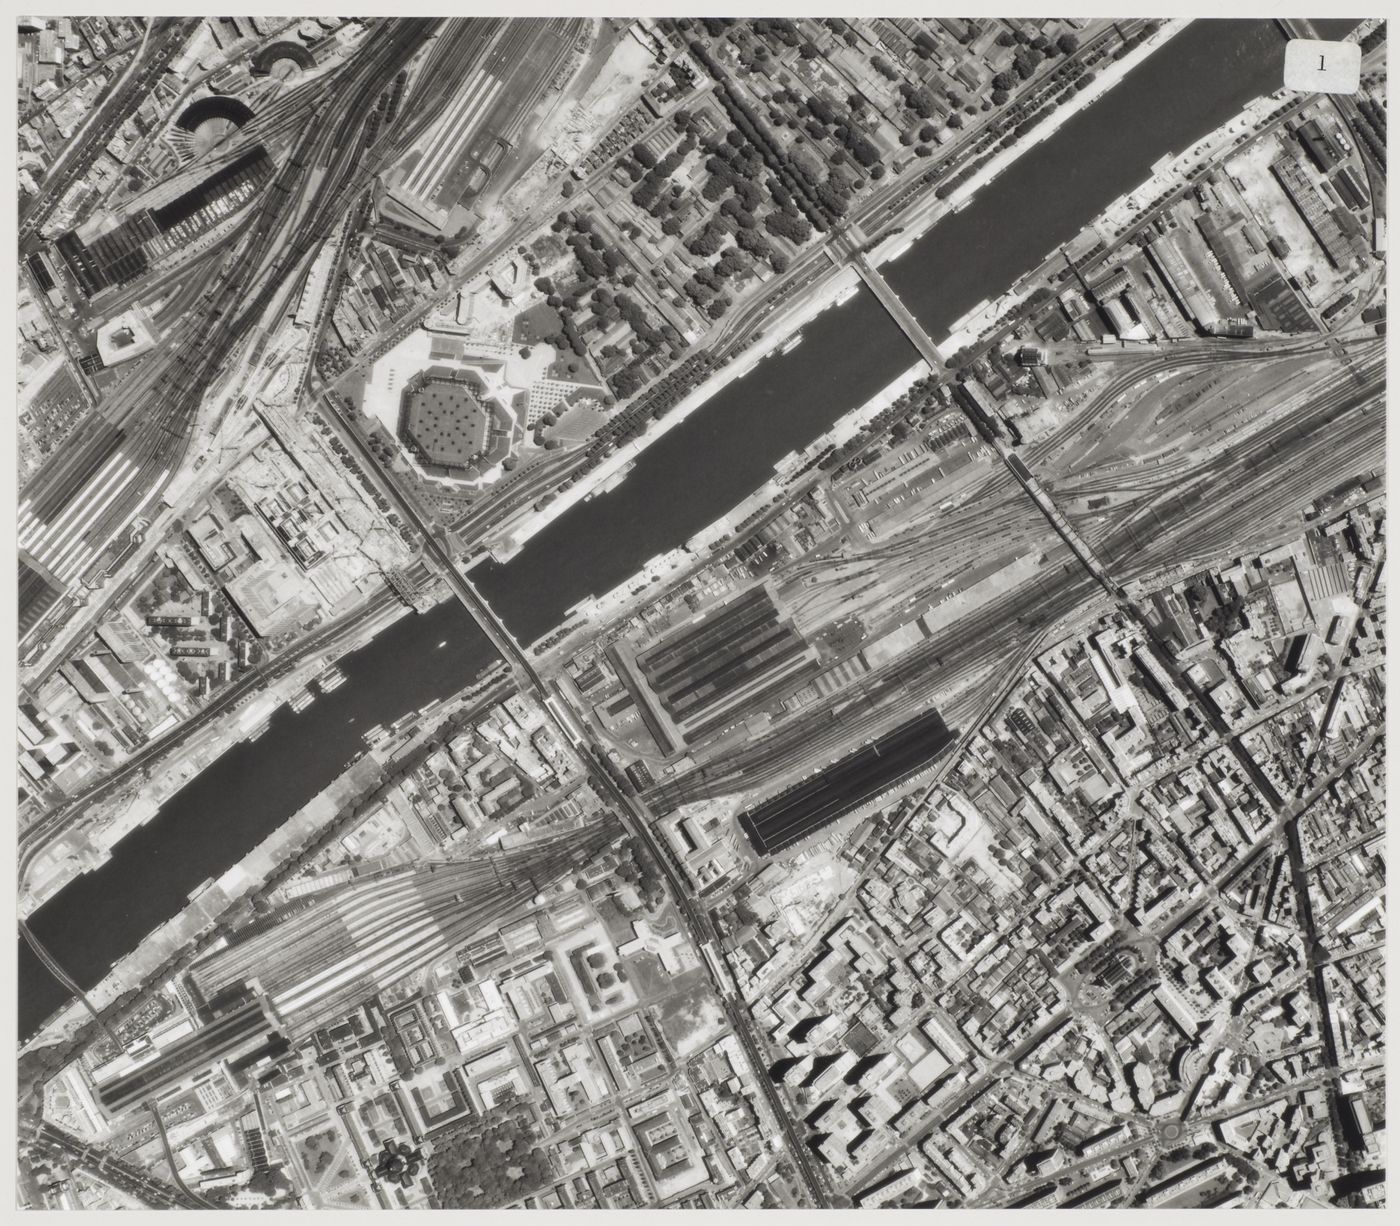 Bibliothèque de France, Paris, France: aerial view of site